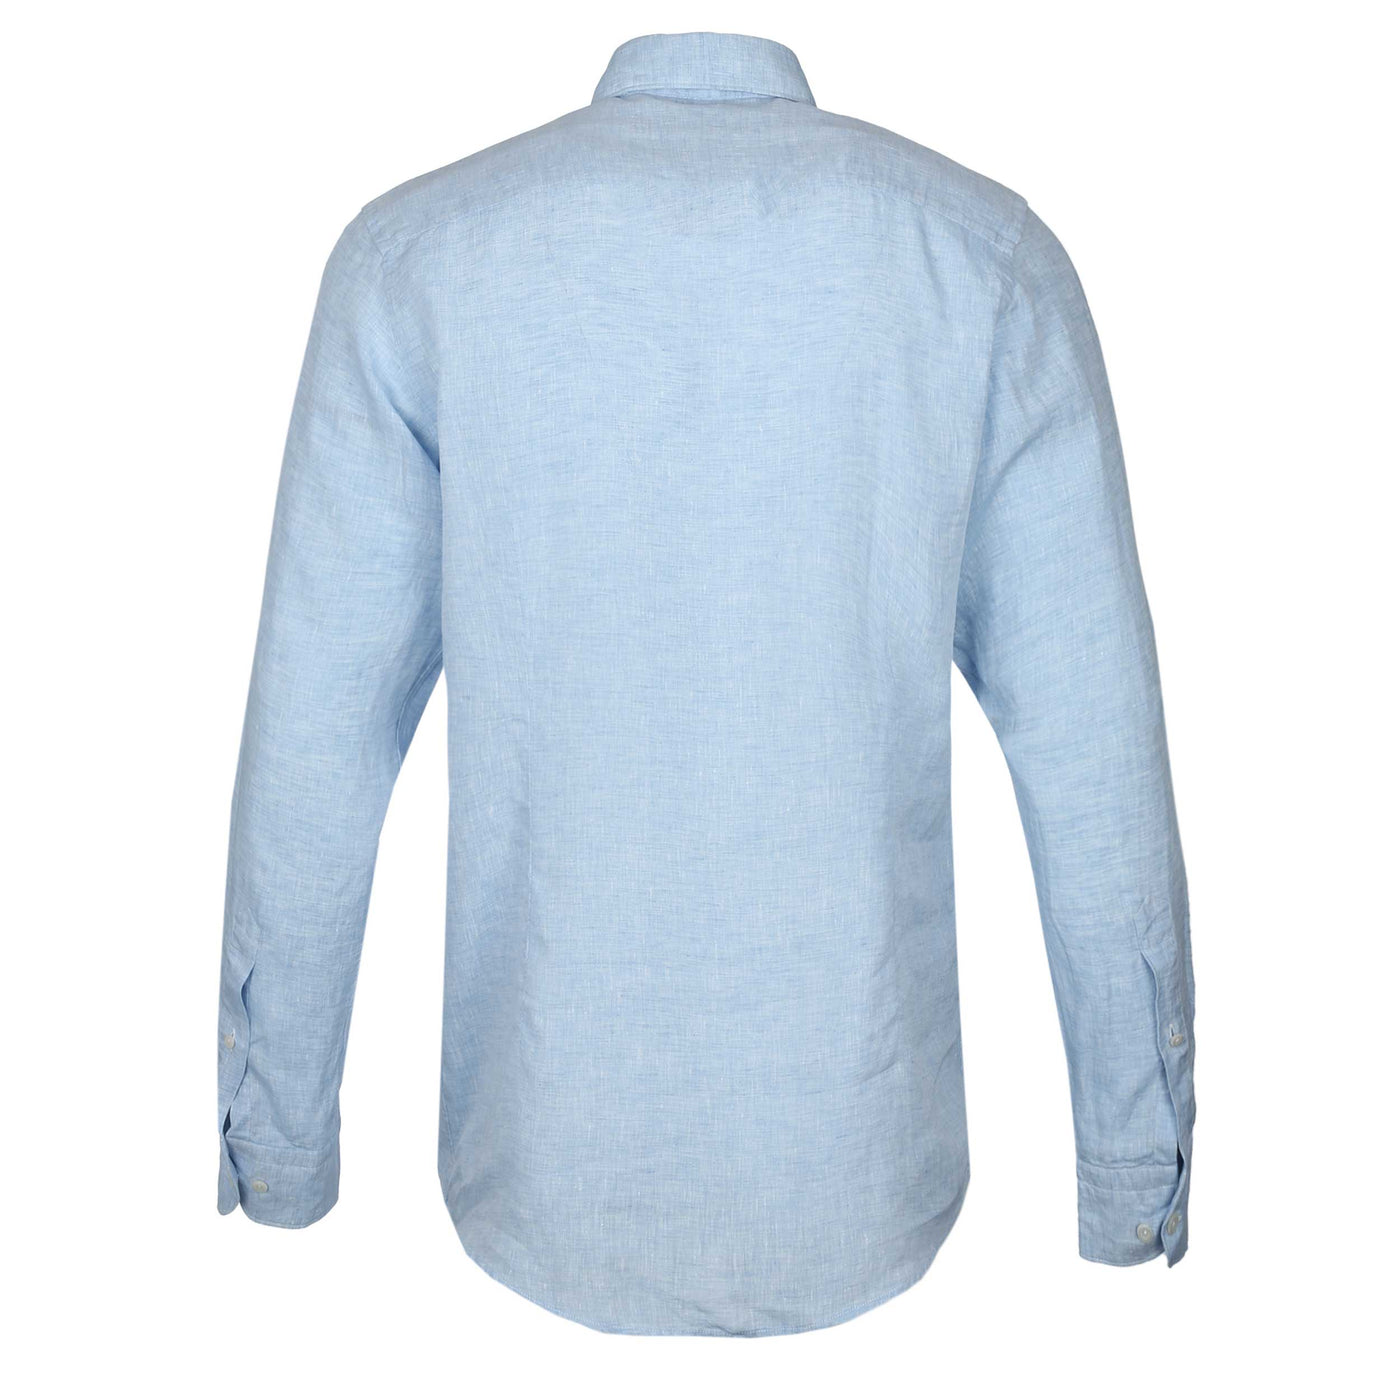 Eton Linen Shirt in Sky Blue Back